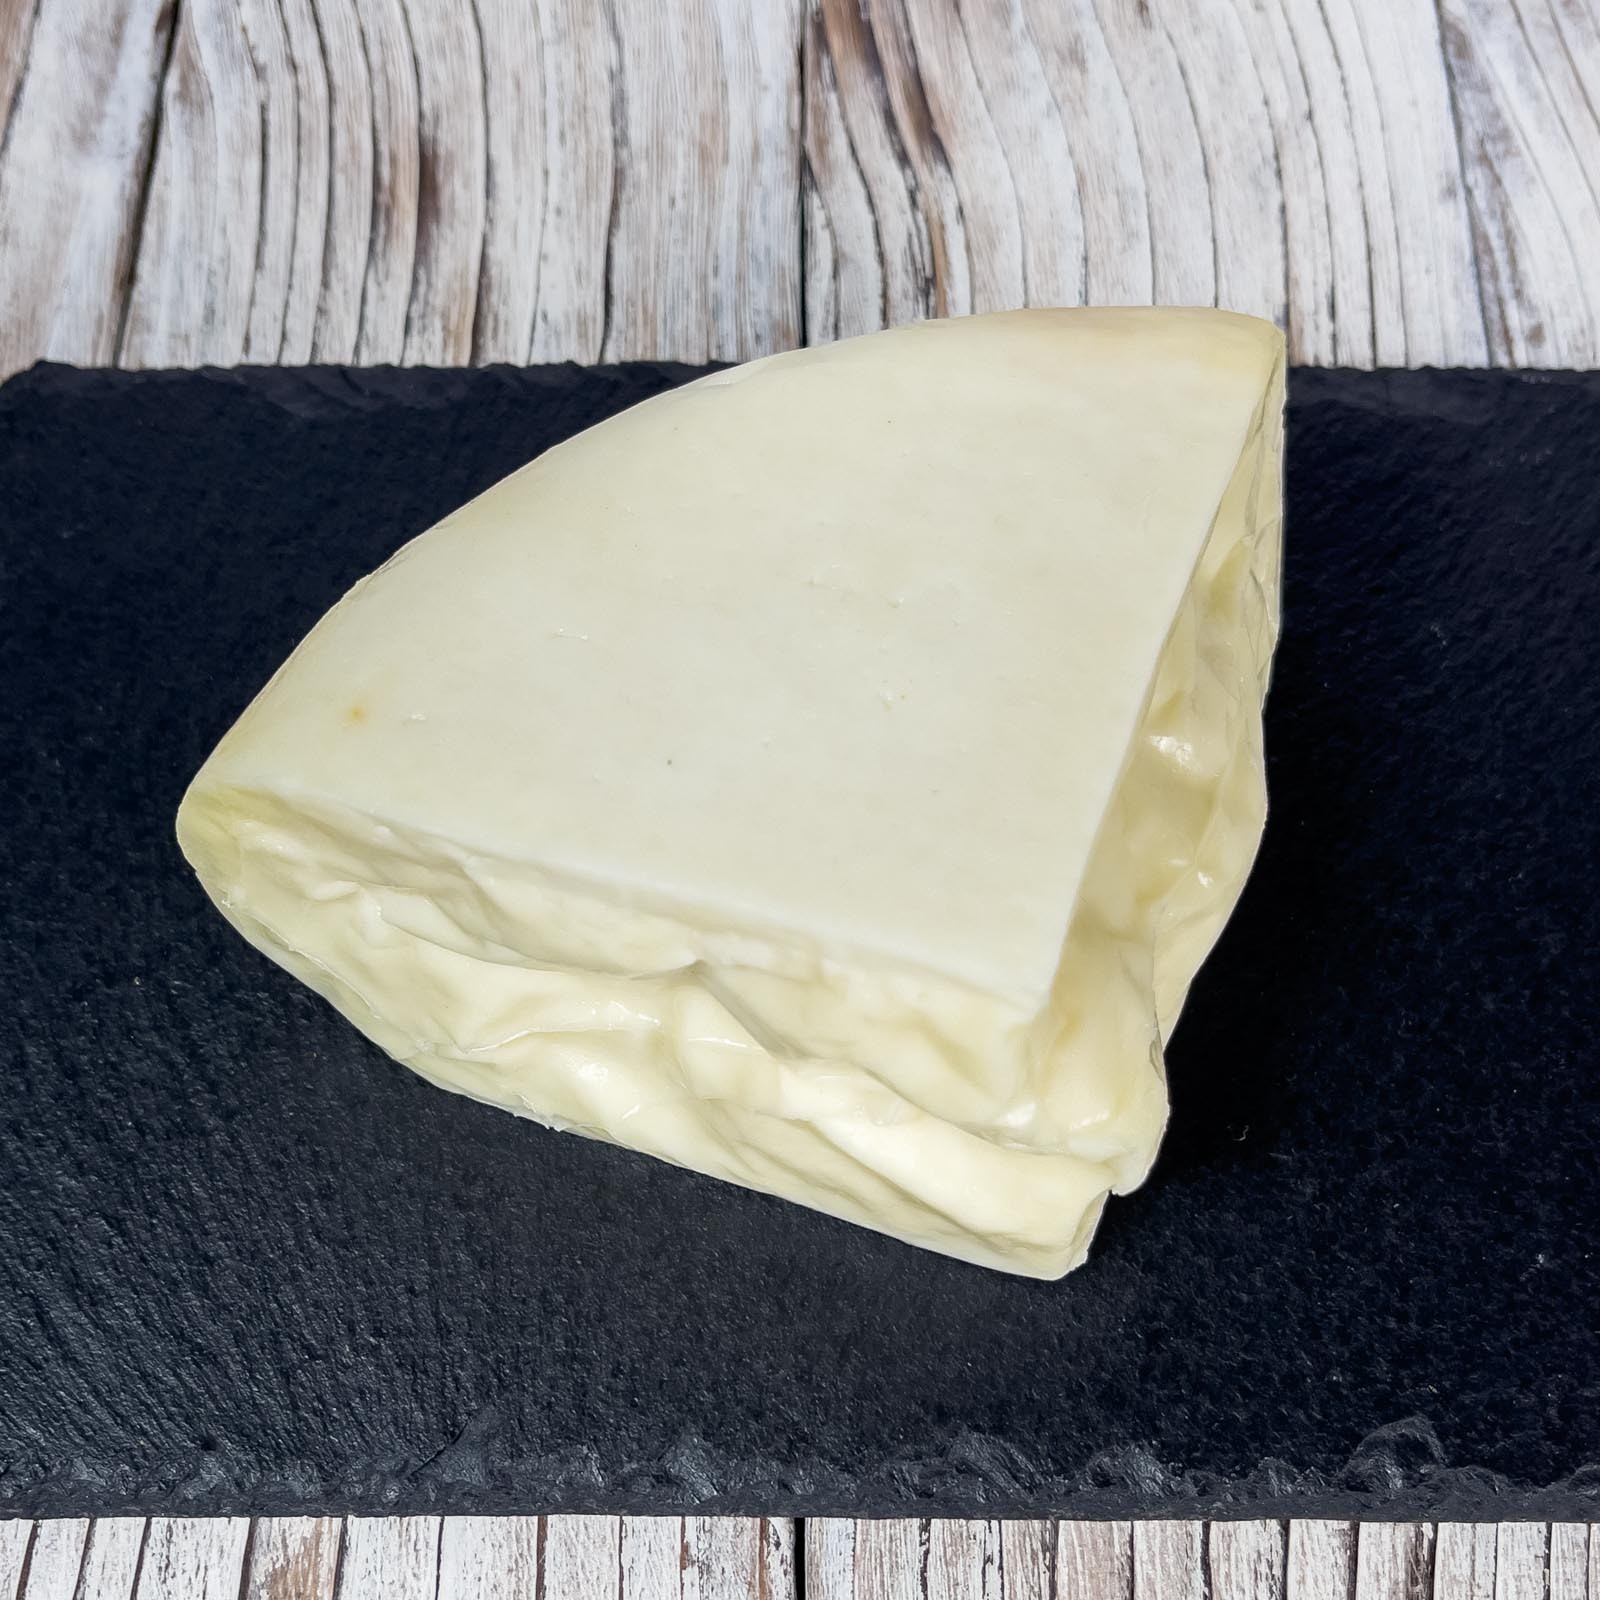 „Giovane” Frischer Pecorino-Käse ist ein weicher und leicht streichfähiger Käse, der in Italien mit hochwertigen Zutaten und ausschließlich aus italienischer Schafsmilch hergestellt wird. Sein intensiver und gleichzeitig delikater Geschmack macht ihn sehr vielseitig in der Küche, kann aber auch roh gegessen werden.